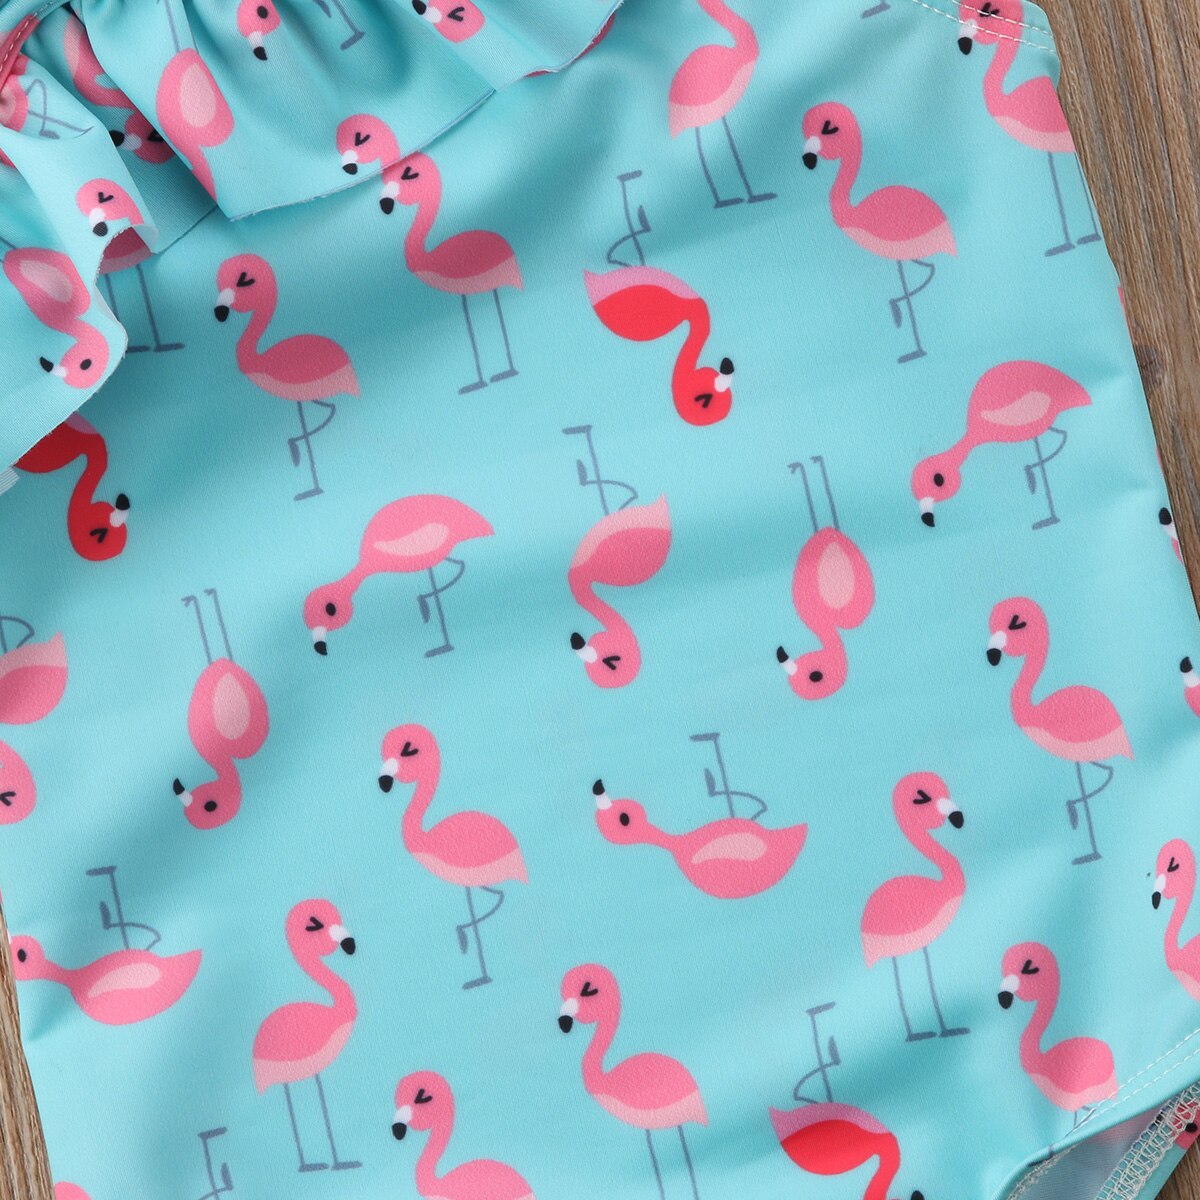 1-7 år sød flamingo print flæse badetøj til småbørn pige børn badedragt strand badedragt børn strandtøj